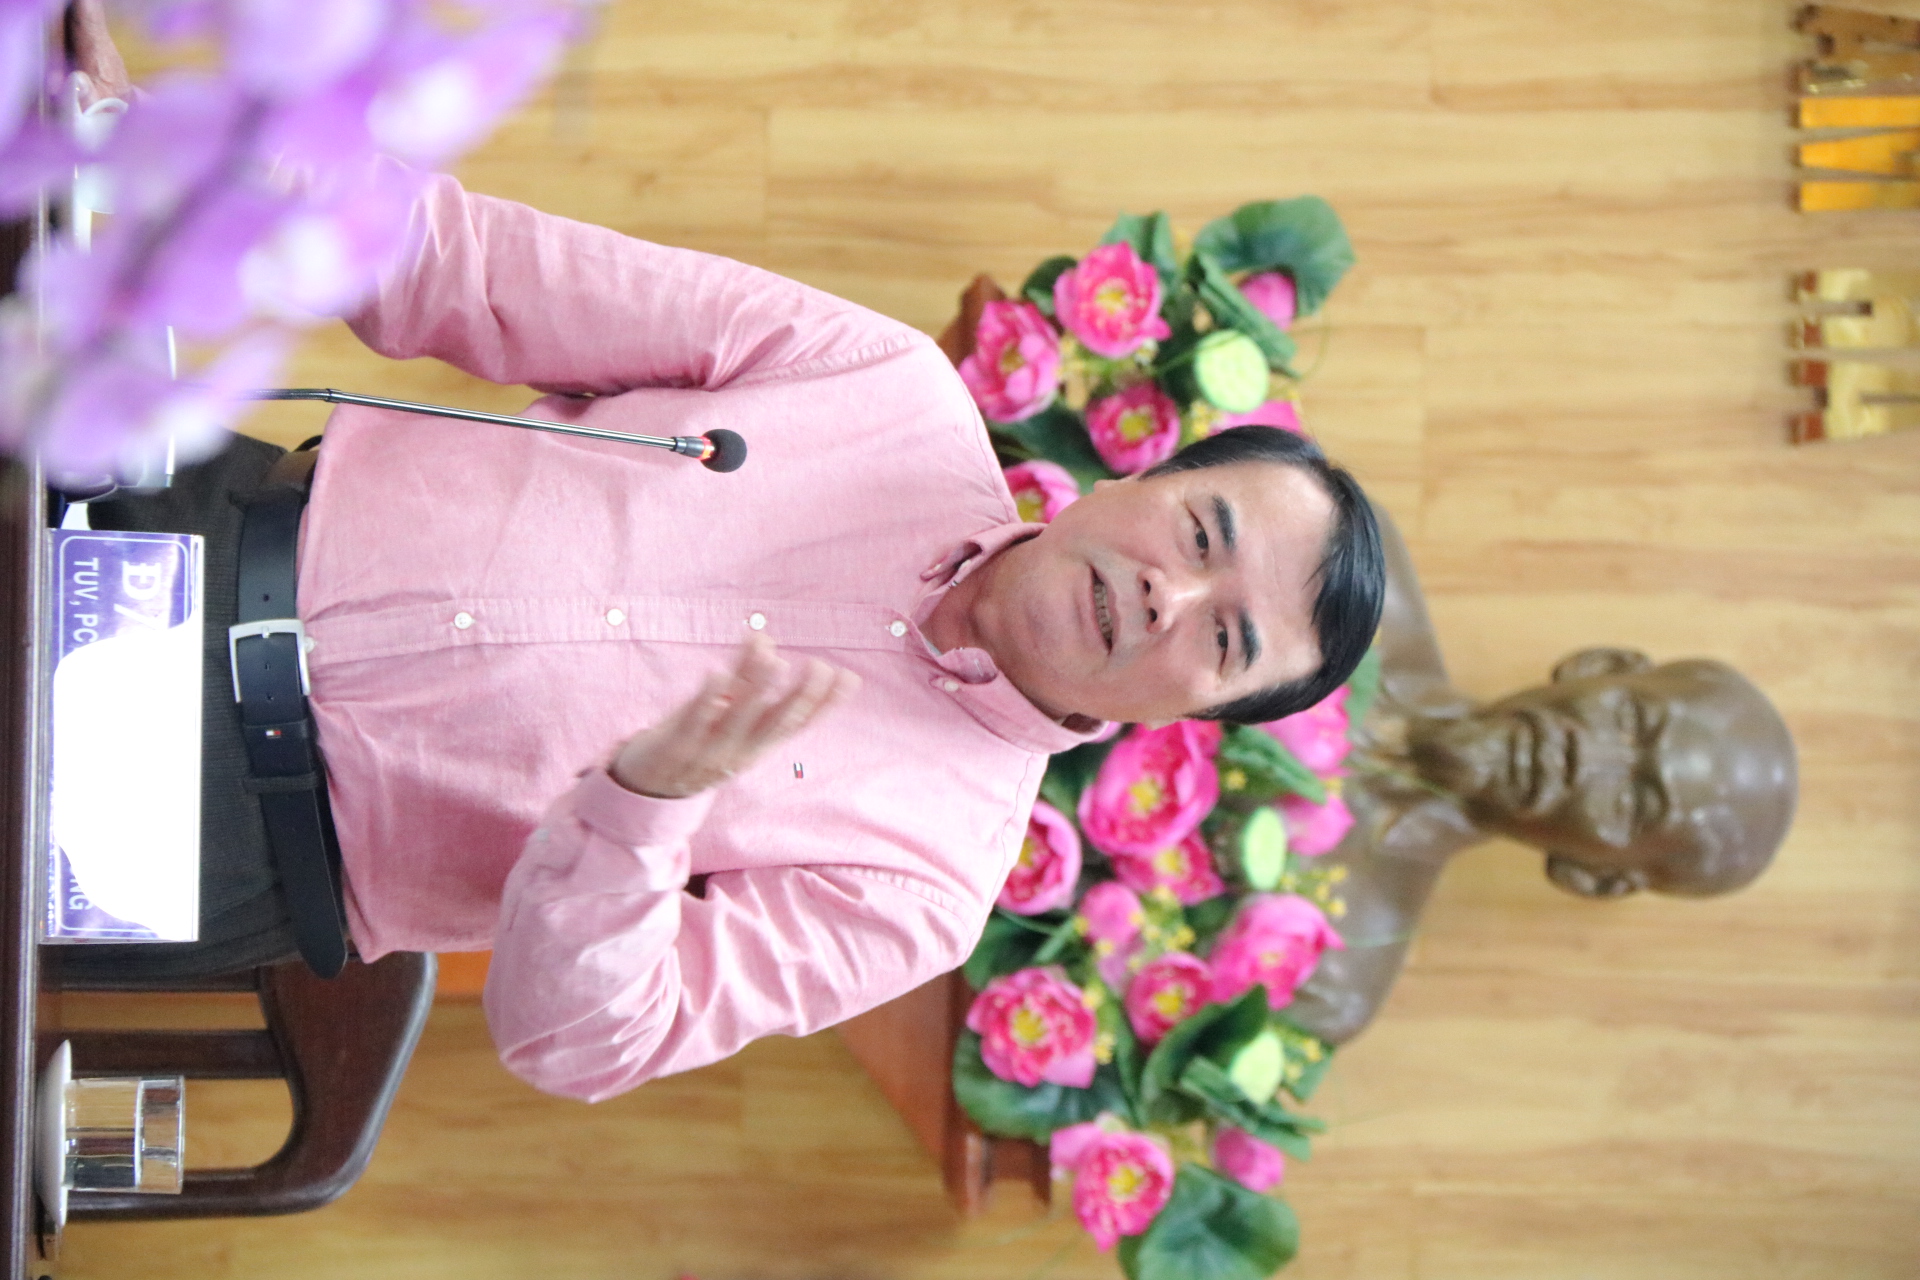 Đồng chí Phạm S - Phó Chủ tịch UBND tỉnh Lâm Đồng phát biểu tại buổi làm việc